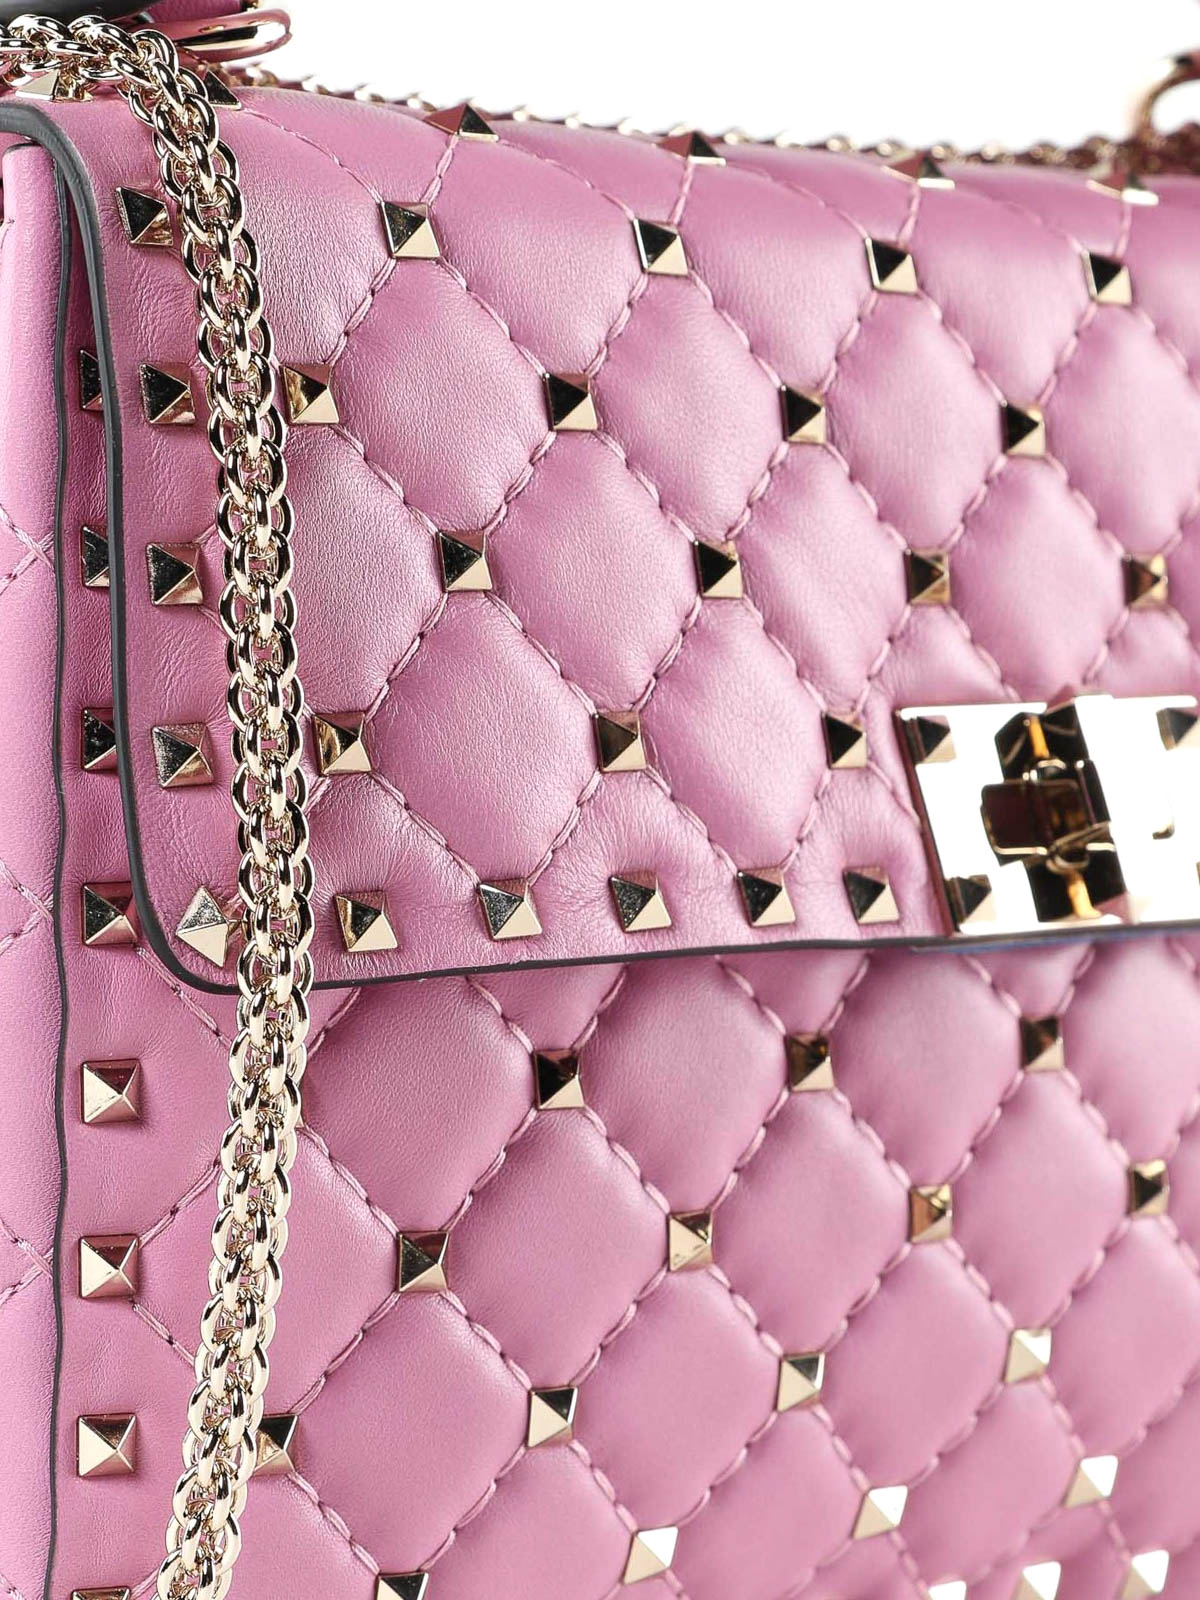 Pink Shoulder Bags for Women, Shop Online